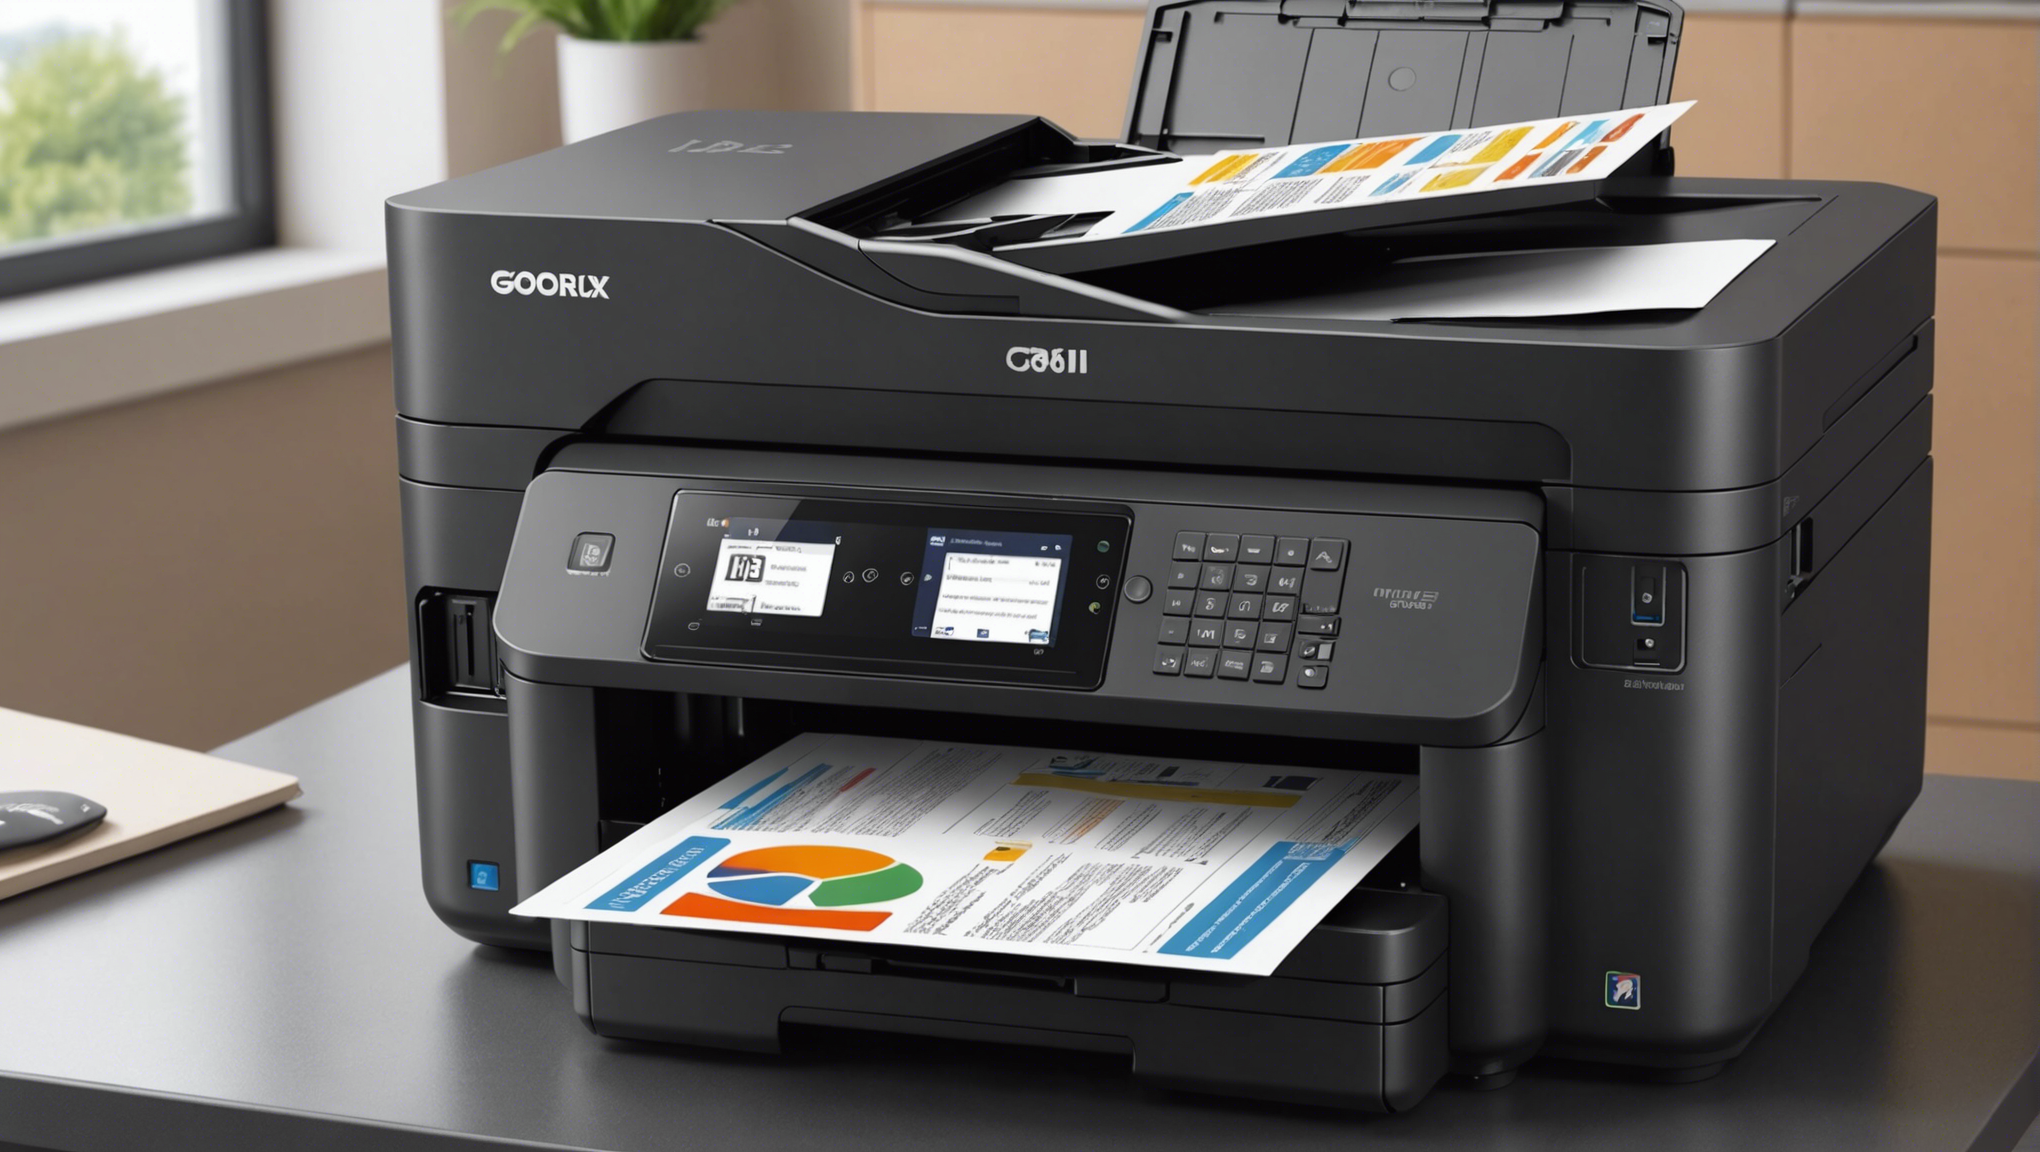 découvrez des imprimantes professionnelles abordables tout-en-un pour vos besoins d'impression avec une qualité exceptionnelle à prix compétitifs.